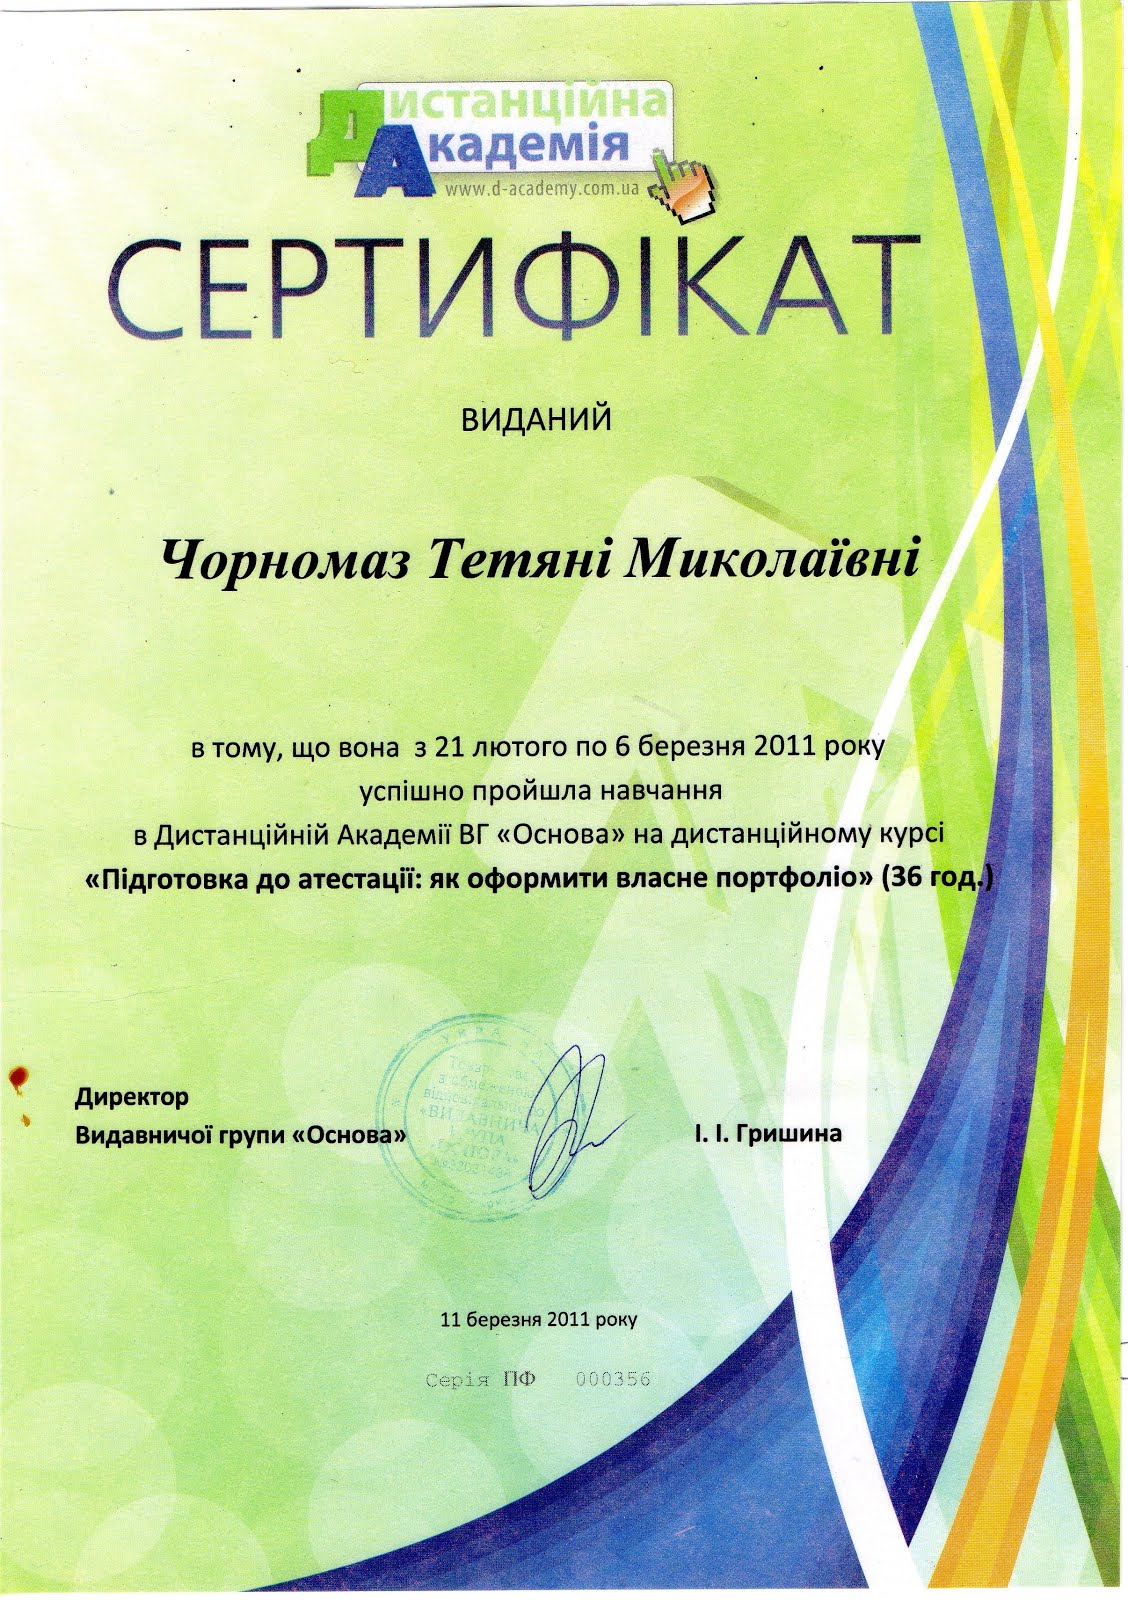 Сертифікат про проходження навчання